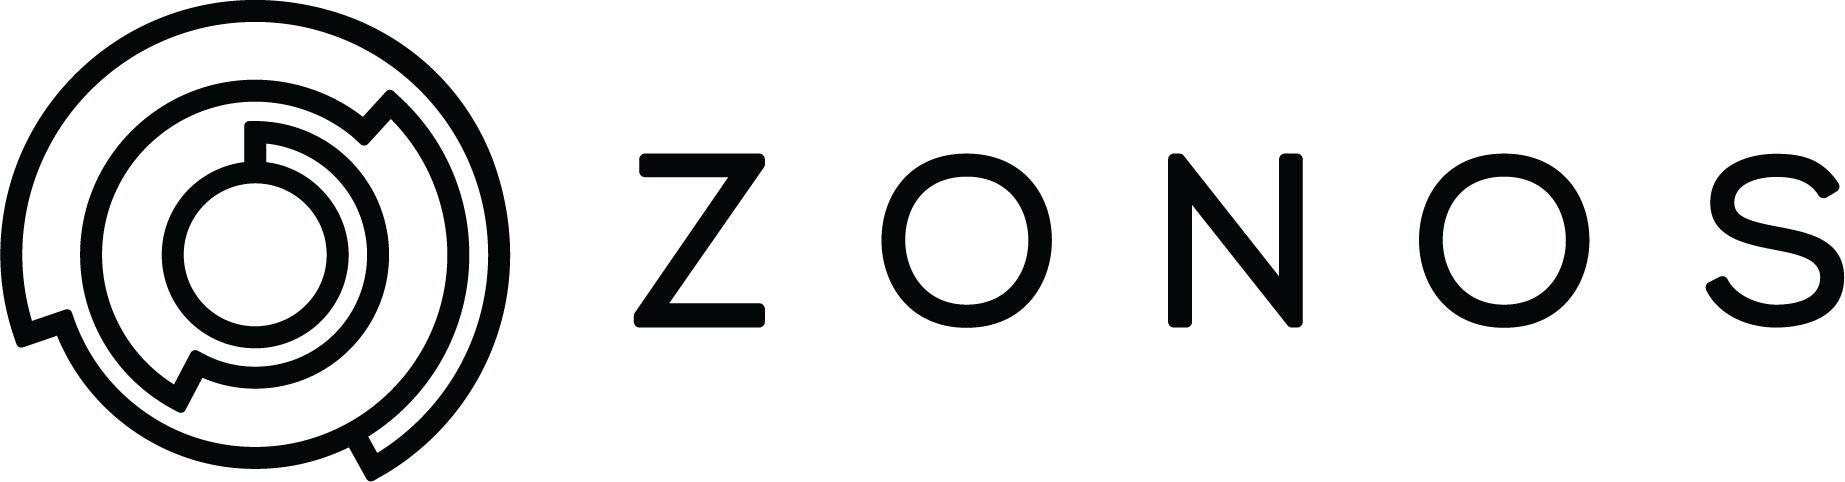 Zonos logo.